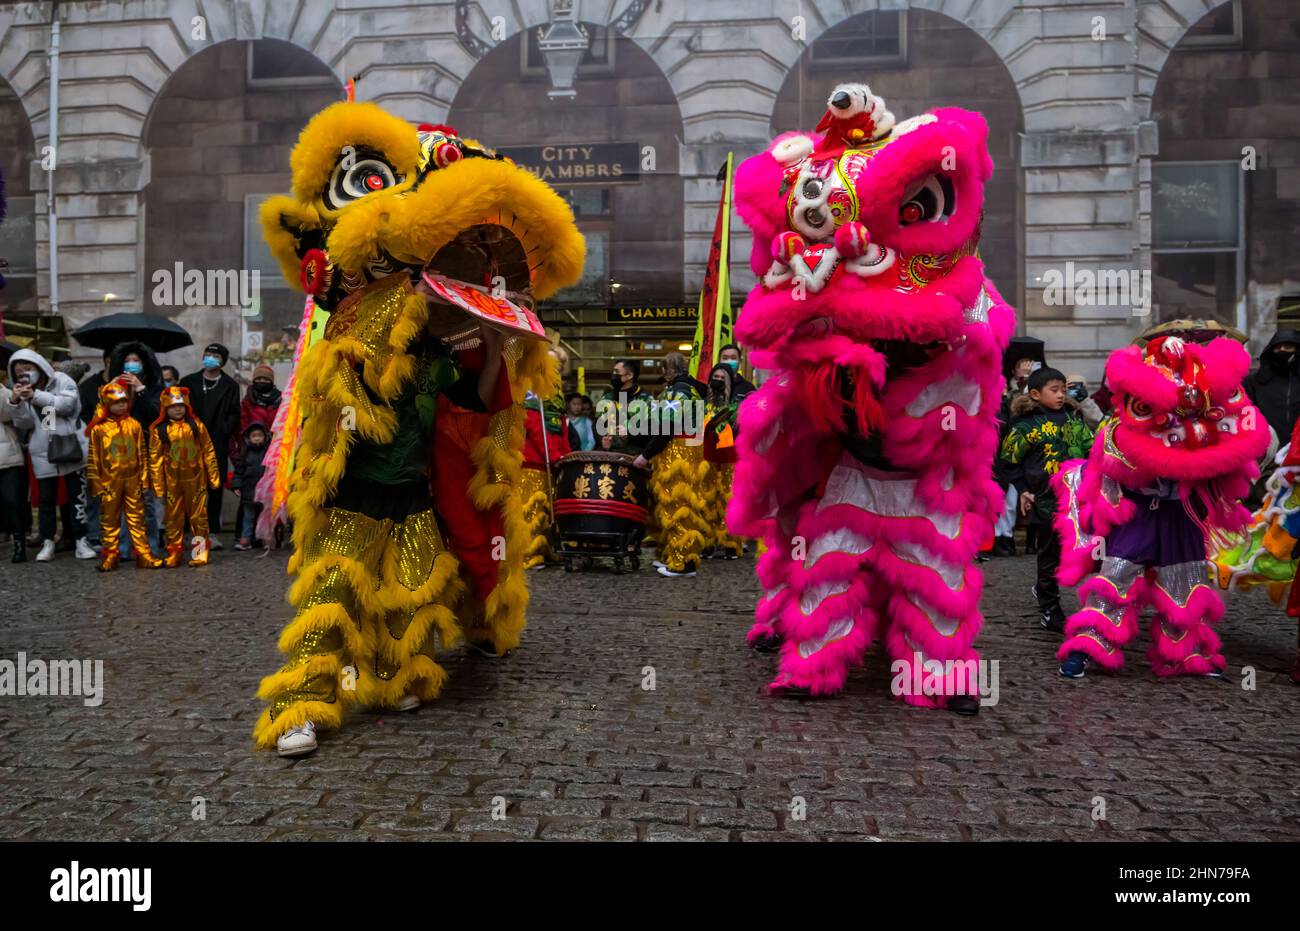 Fête du nouvel an chinois avec des artistes en costumes colorés, City Chambers, Édimbourg, Écosse, Royaume-Uni Banque D'Images